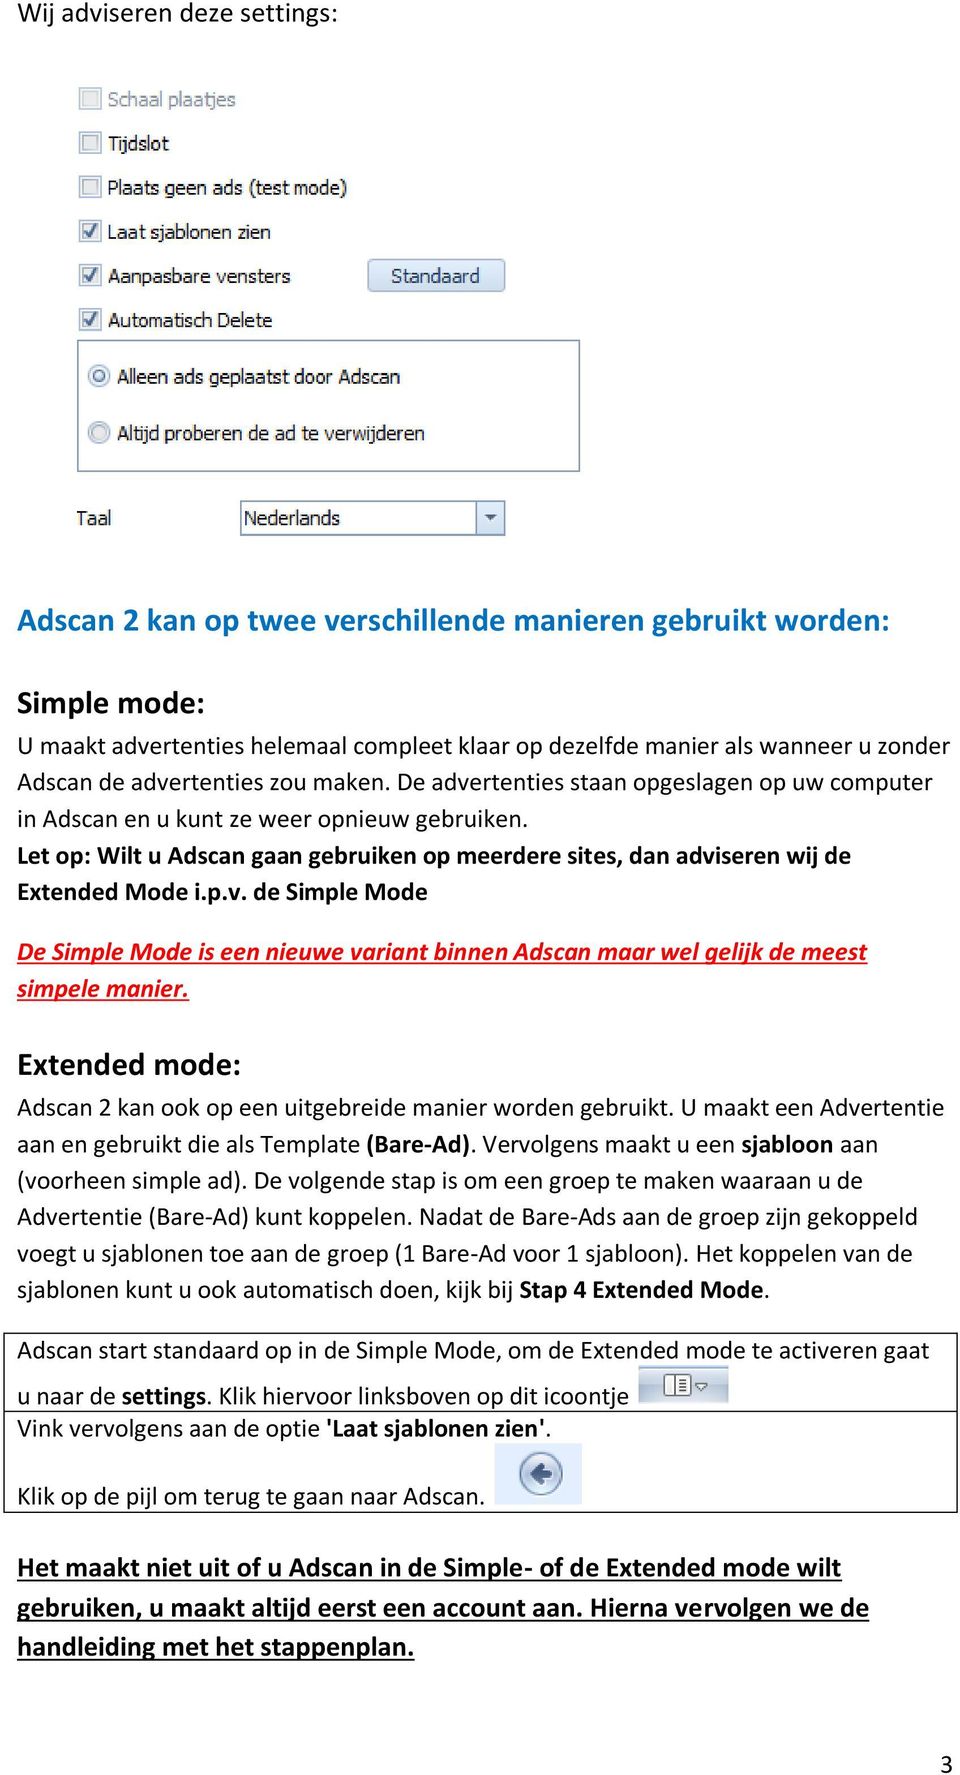 Let op: Wilt u Adscan gaan gebruiken op meerdere sites, dan adviseren wij de Extended Mode i.p.v. de Simple Mode De Simple Mode is een nieuwe variant binnen Adscan maar wel gelijk de meest simpele manier.